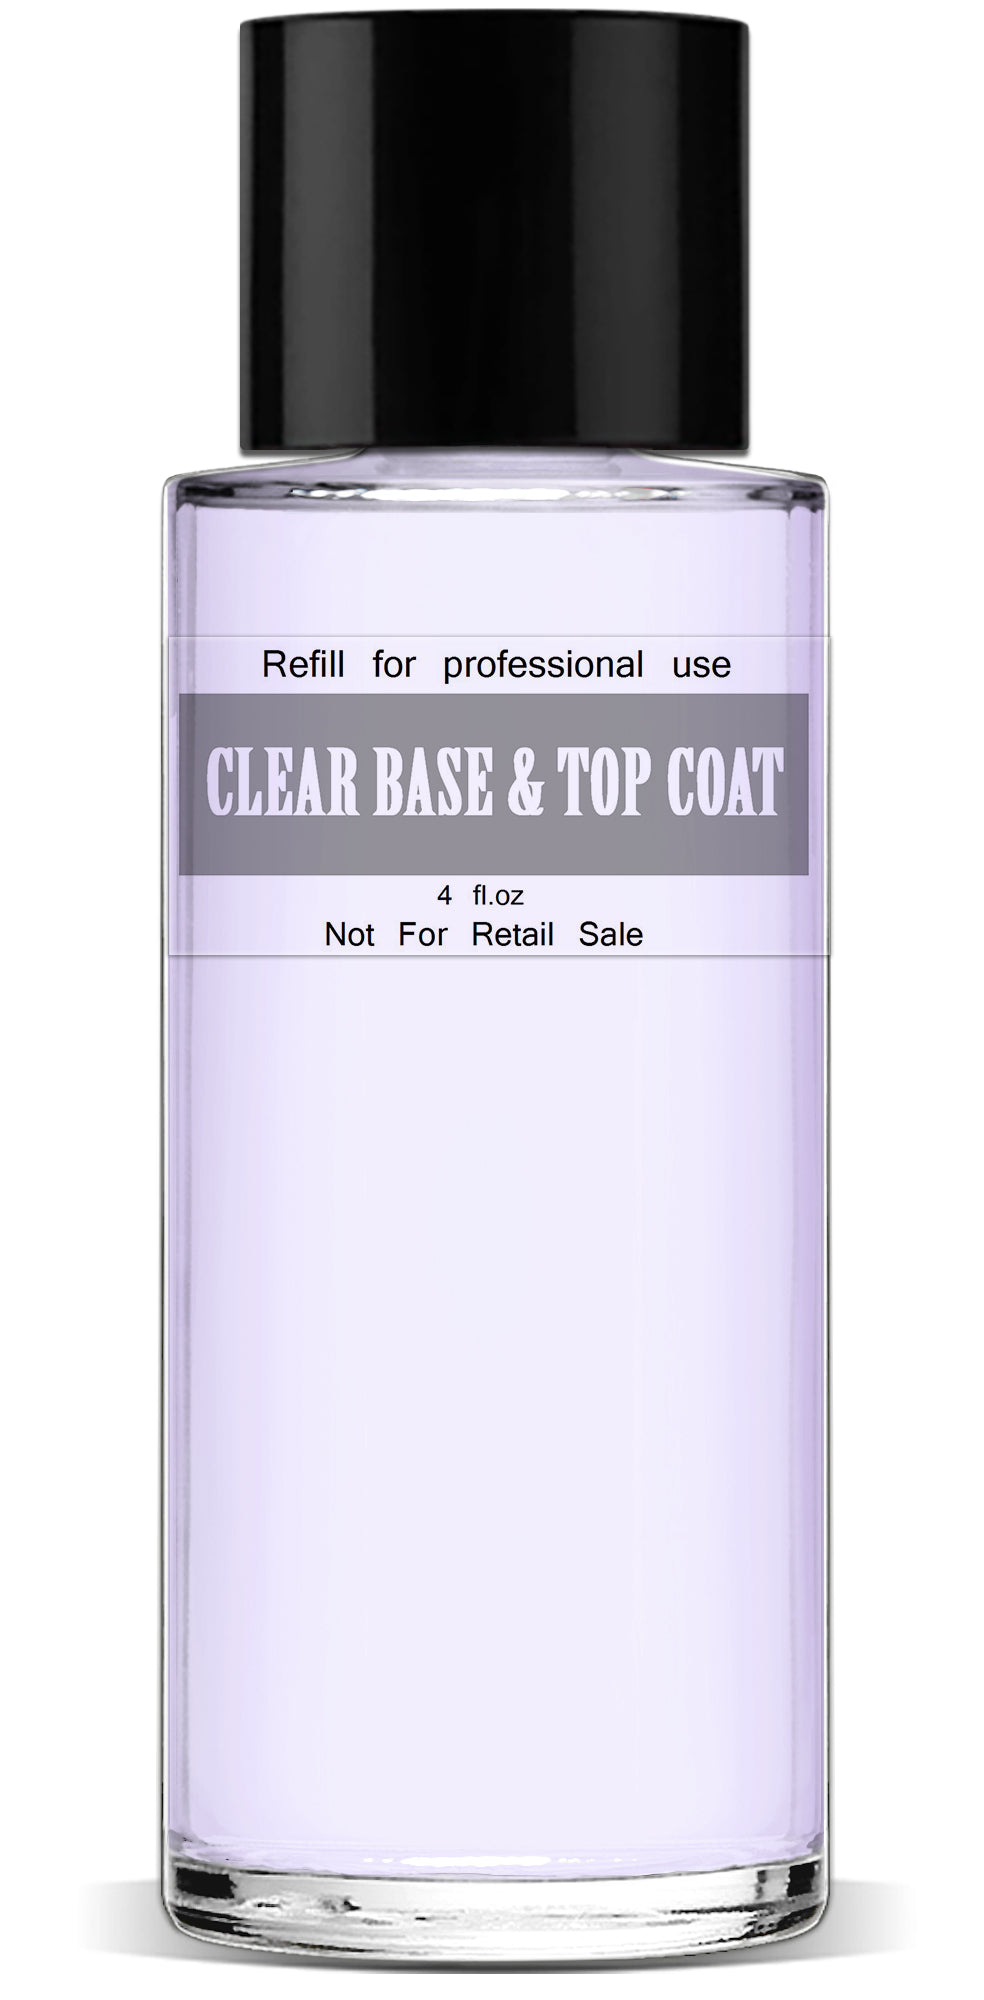 Clear Base & Top Coat, 4 fl.oz. Refill